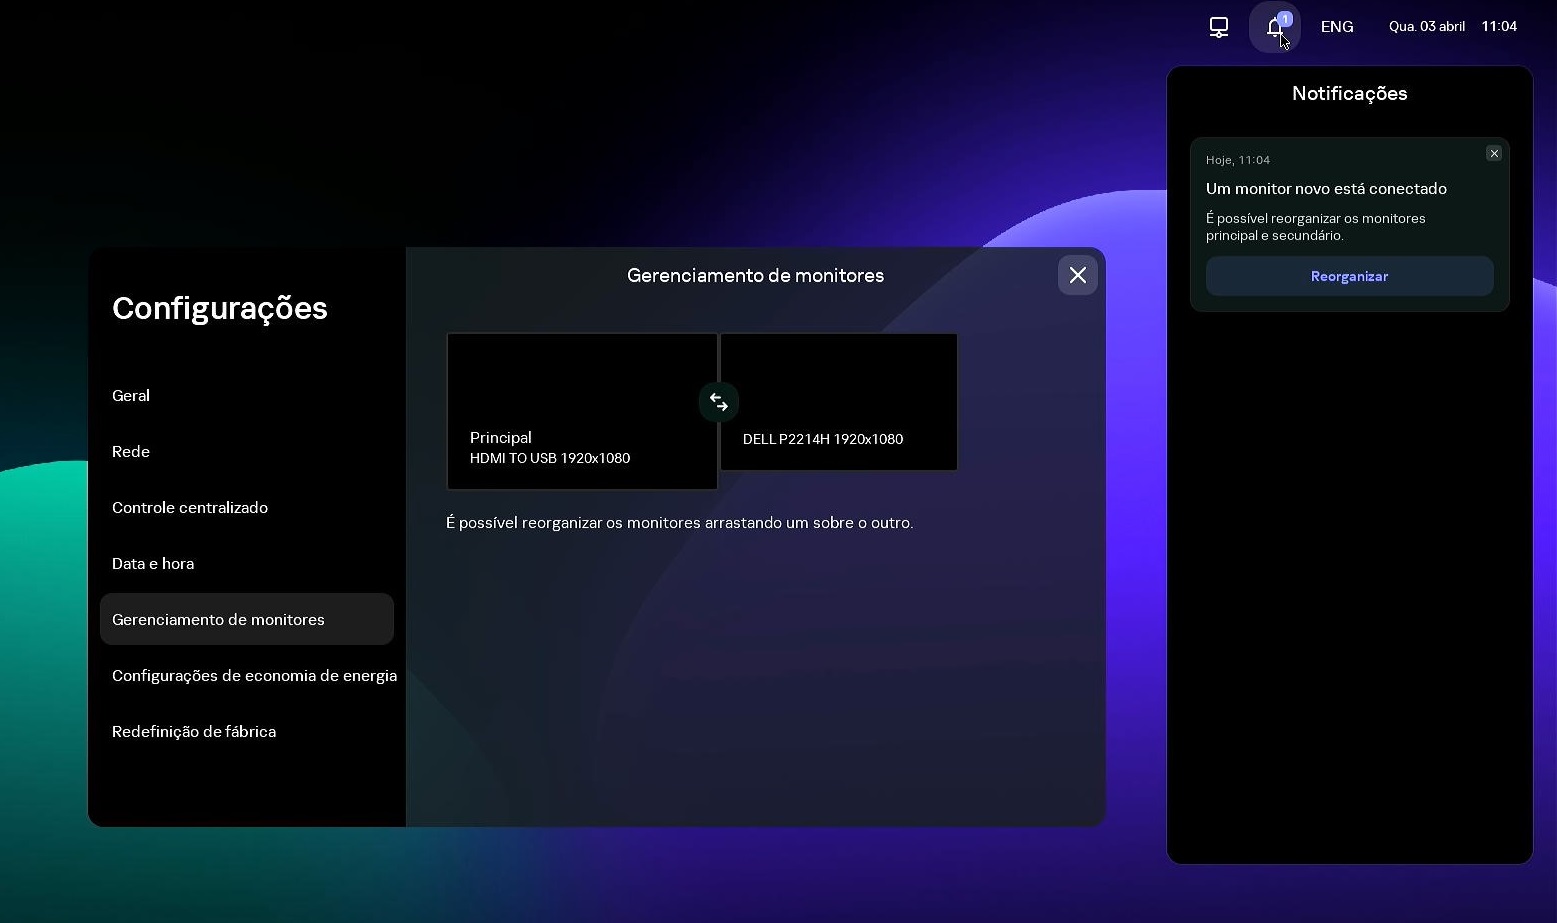 Captura de tela da tela do Kaspersky Thin Client com o painel de notificações aberto.